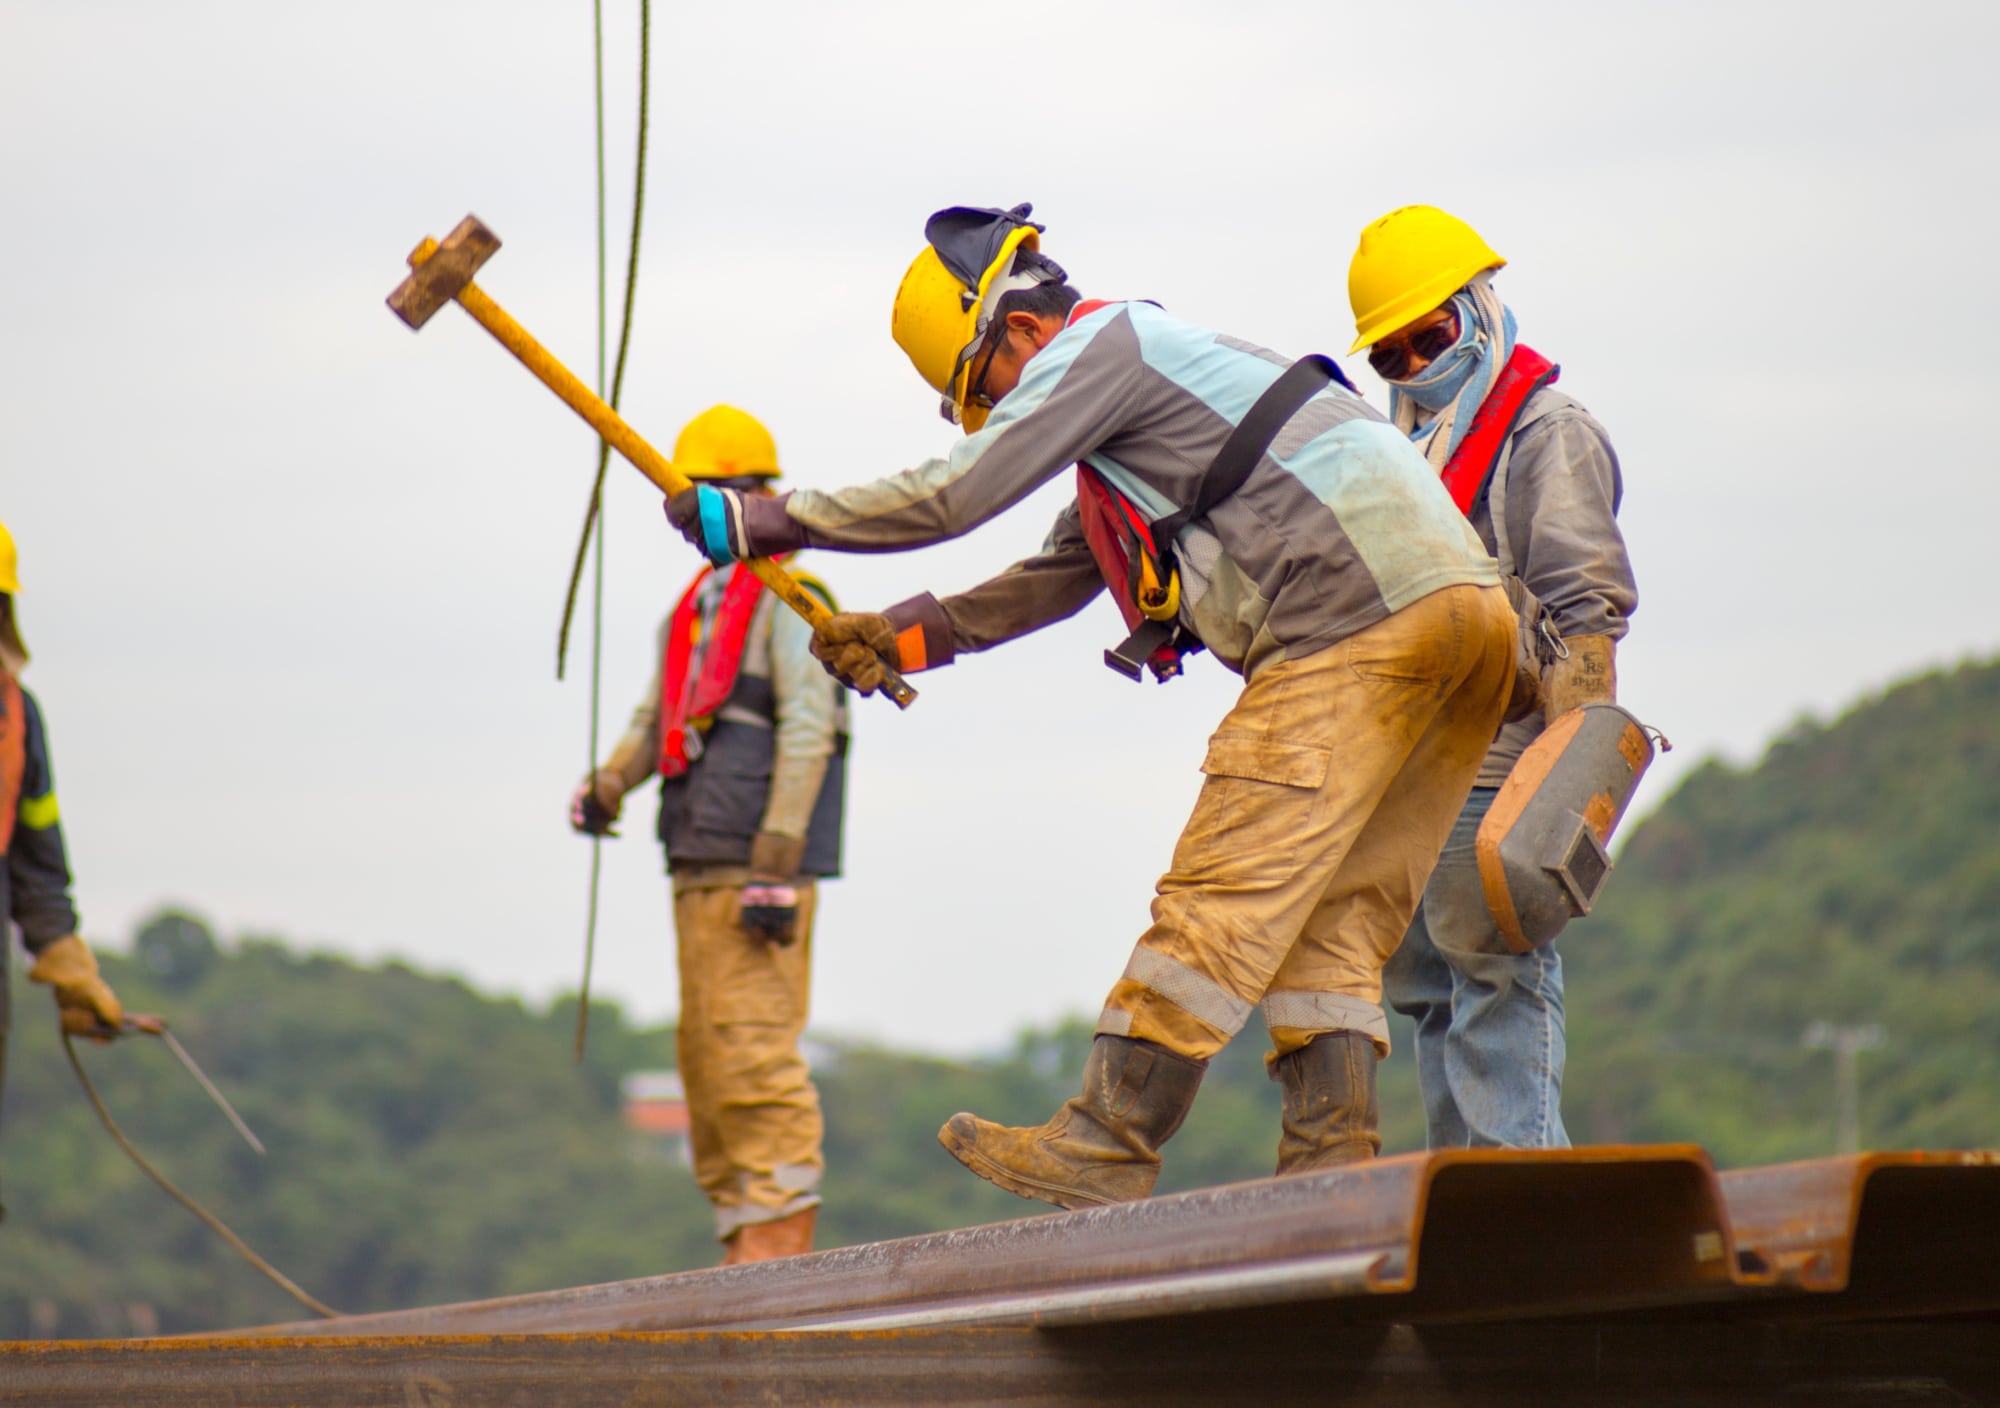 Hommes travaillant sur un toit, avec un casque de protection